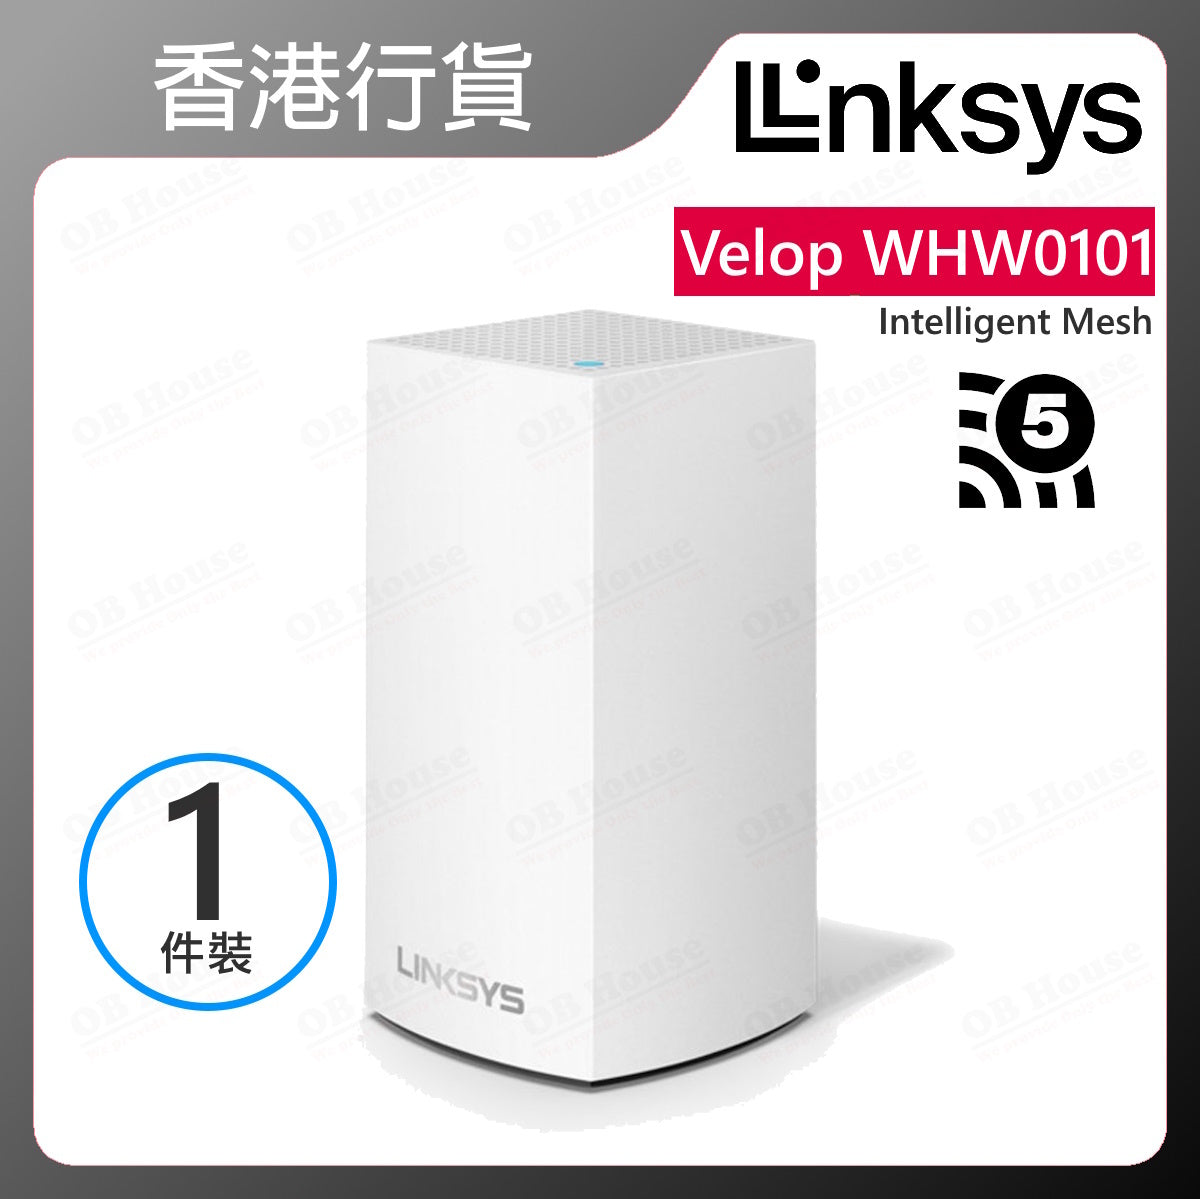 Velop 智慧型網狀 WiFi 系統 (WHW0101)